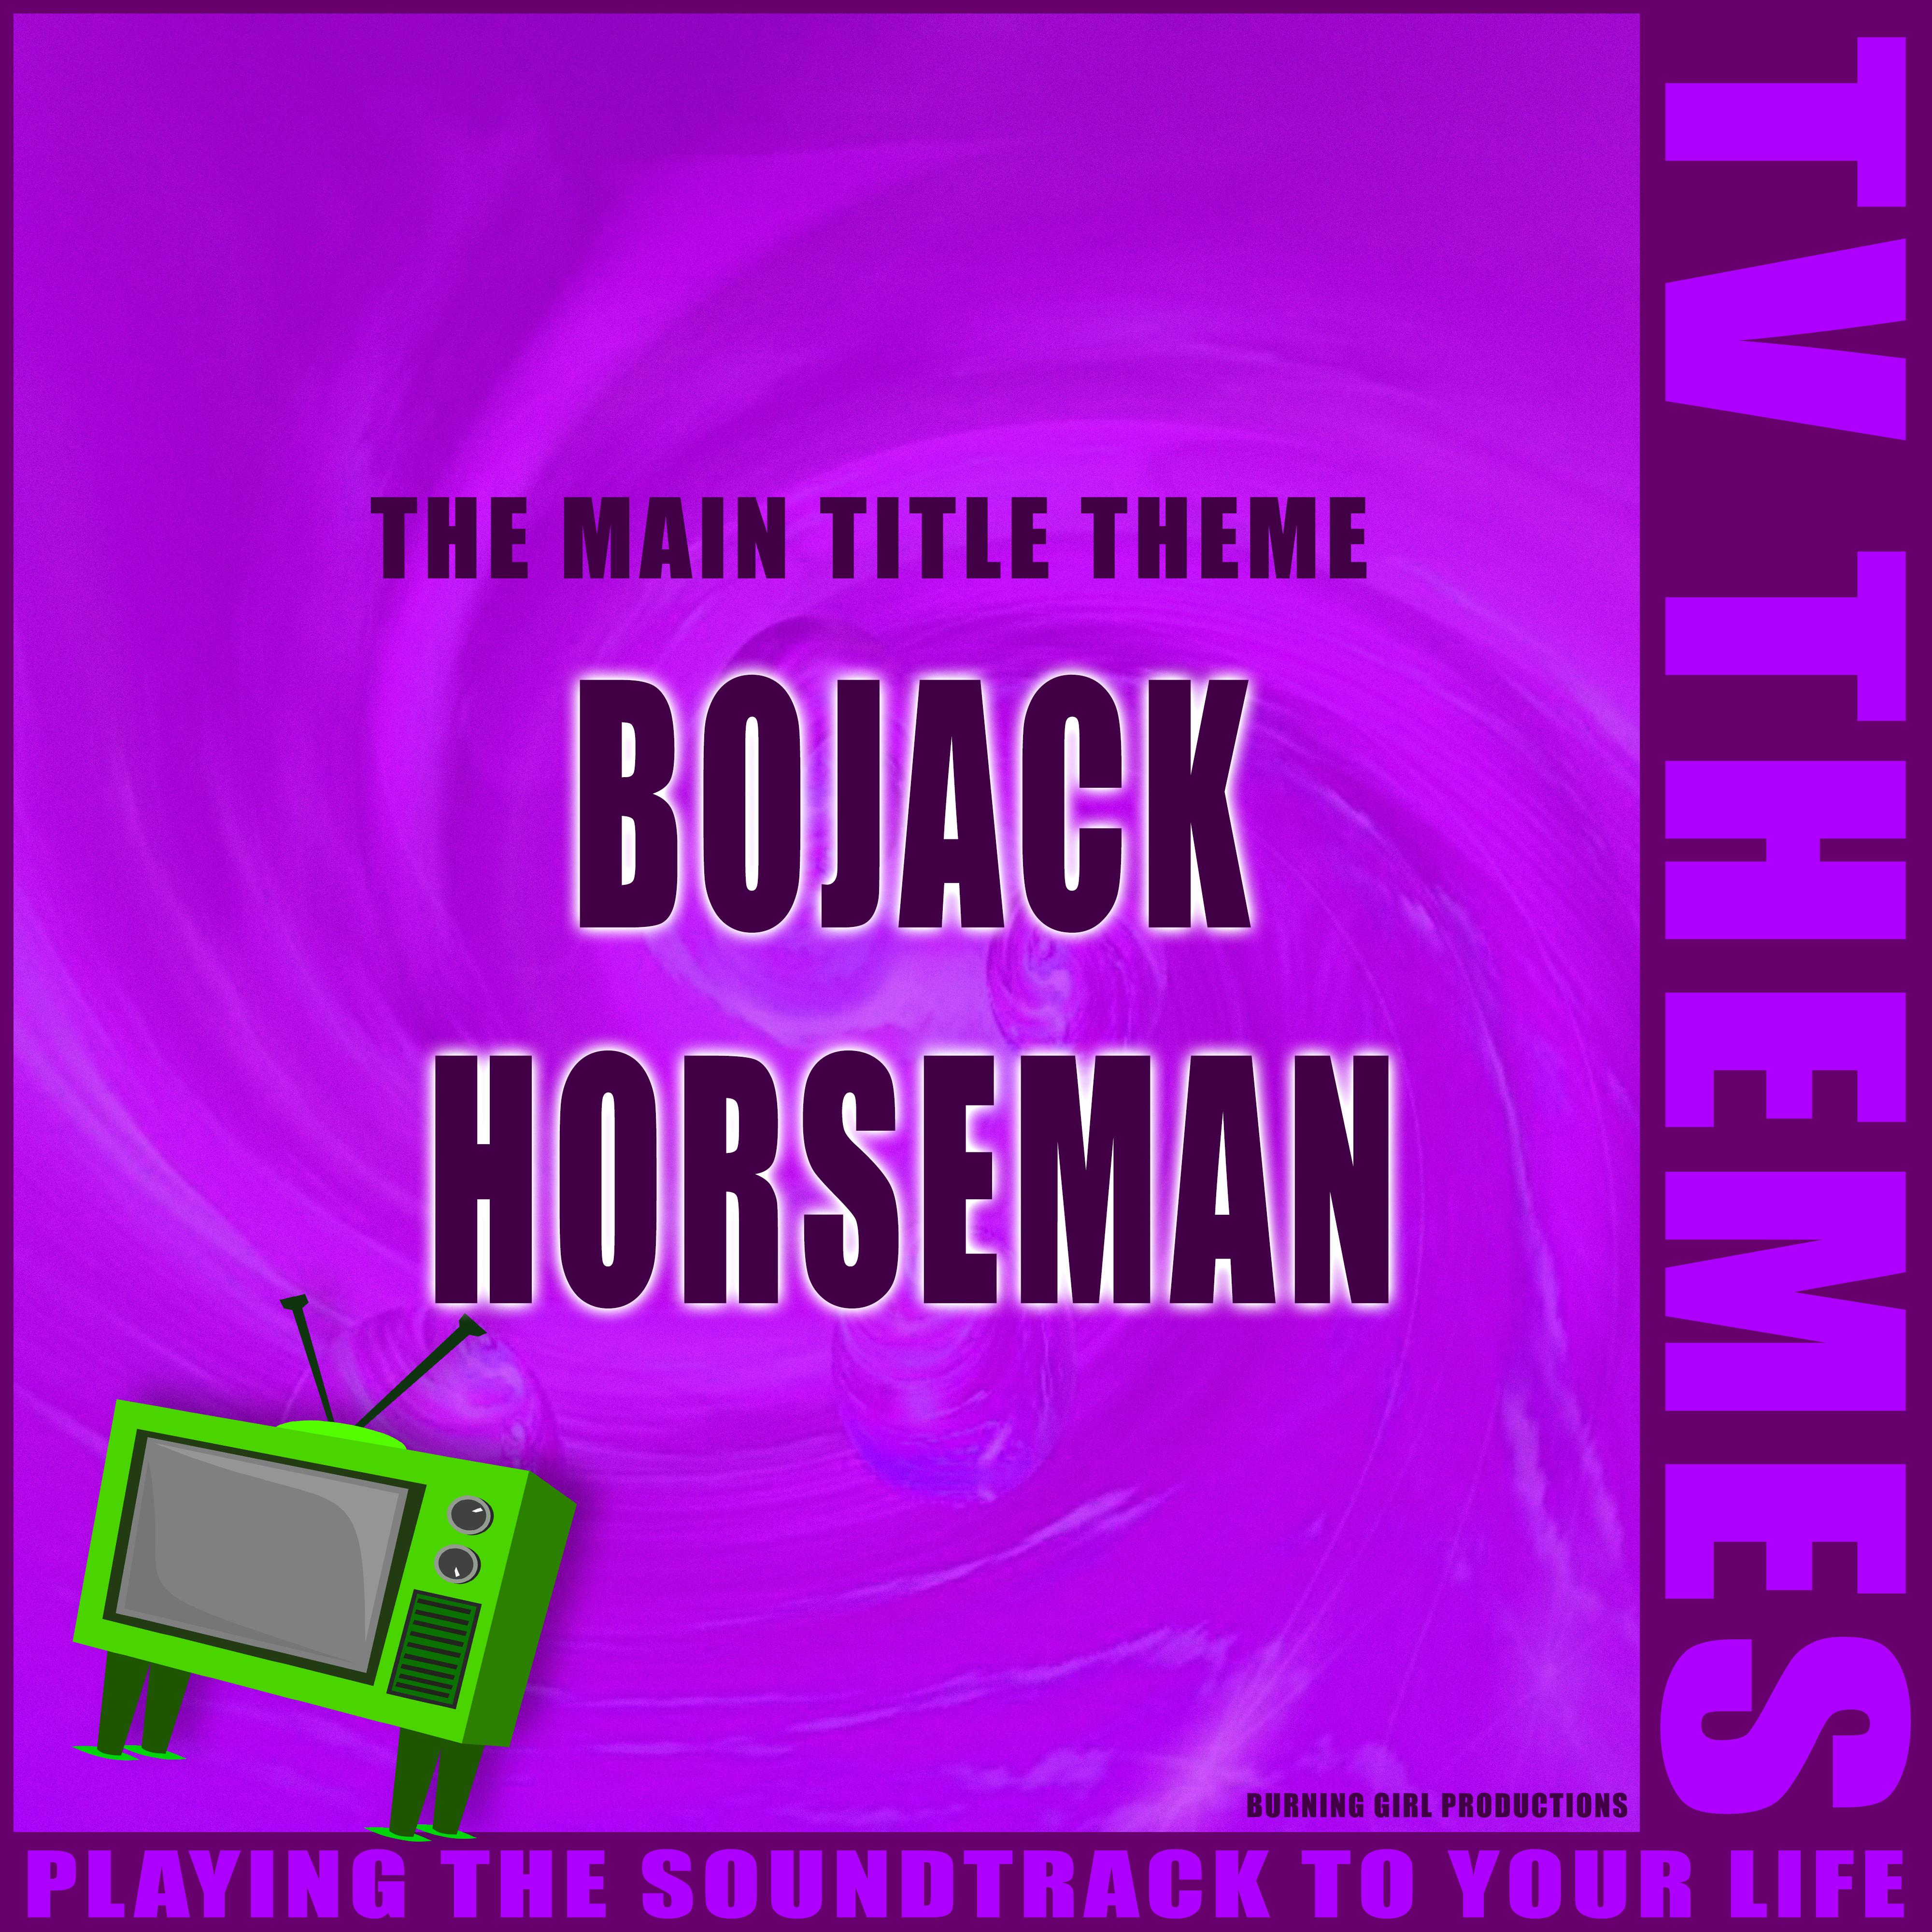 The Main Title Theme - Bojack Horseman